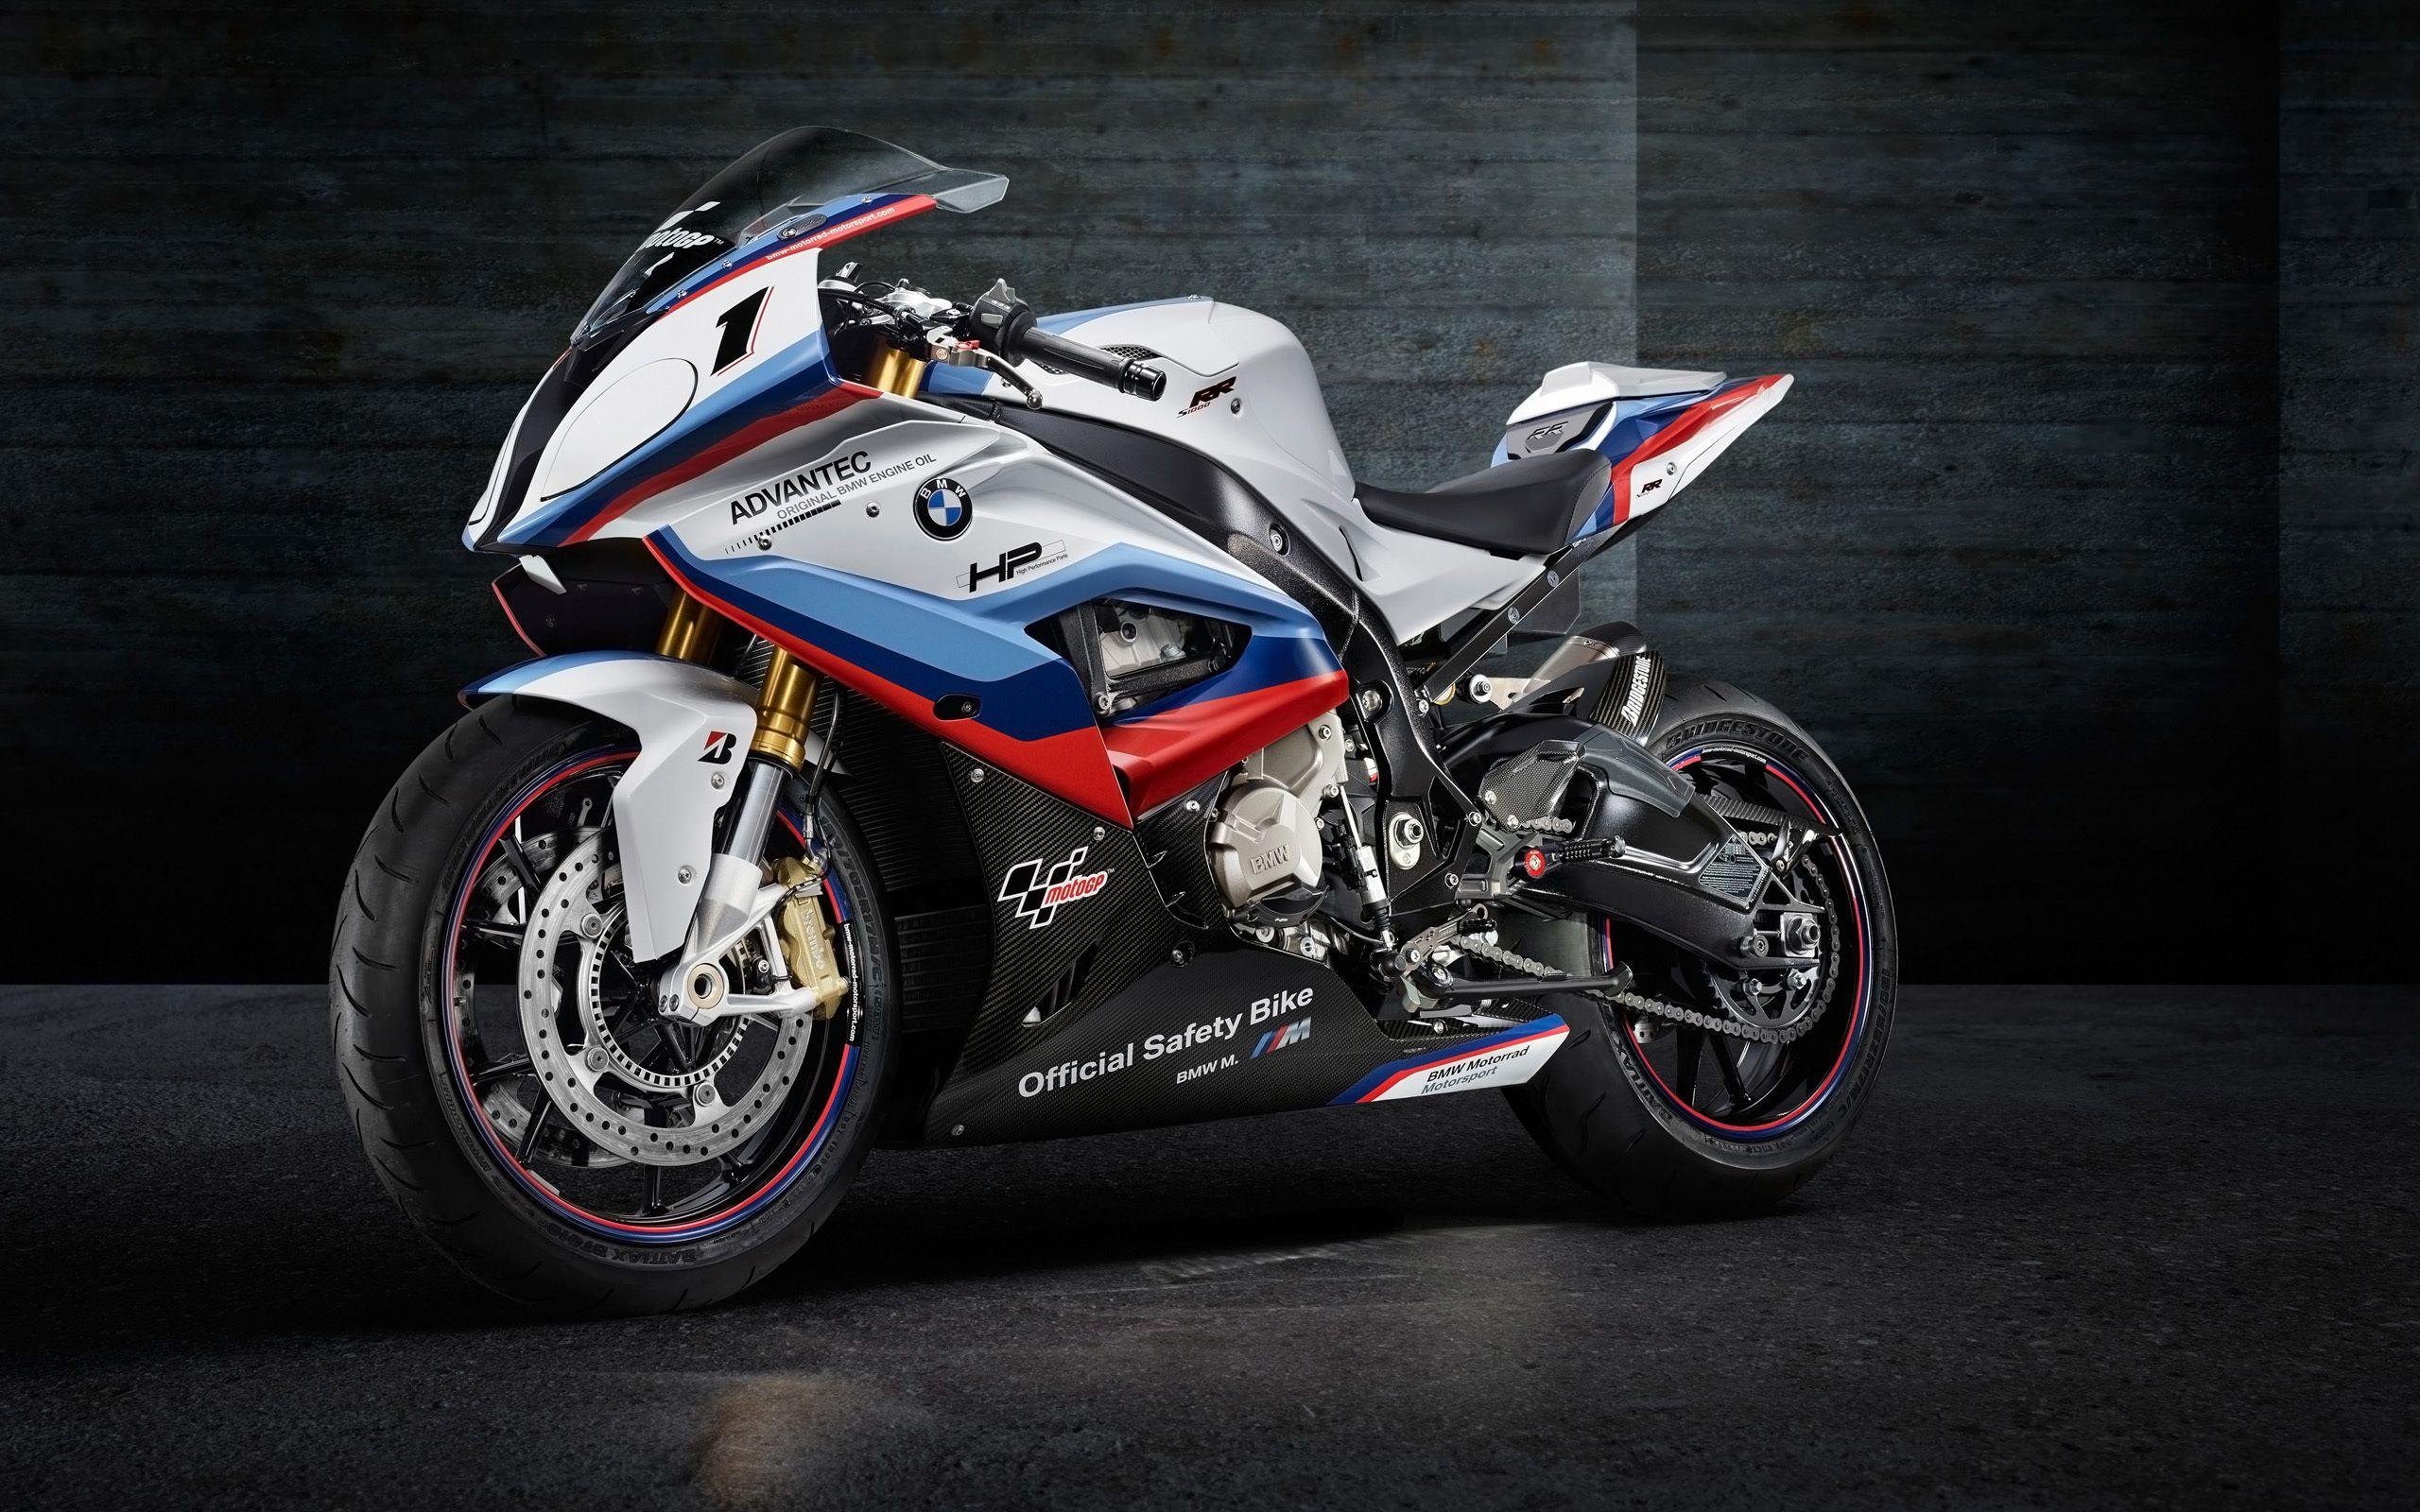 Wallpaper BMW S1000RR MotoGP Safety Bike Bike, MotoGP, S1000RR, Safety